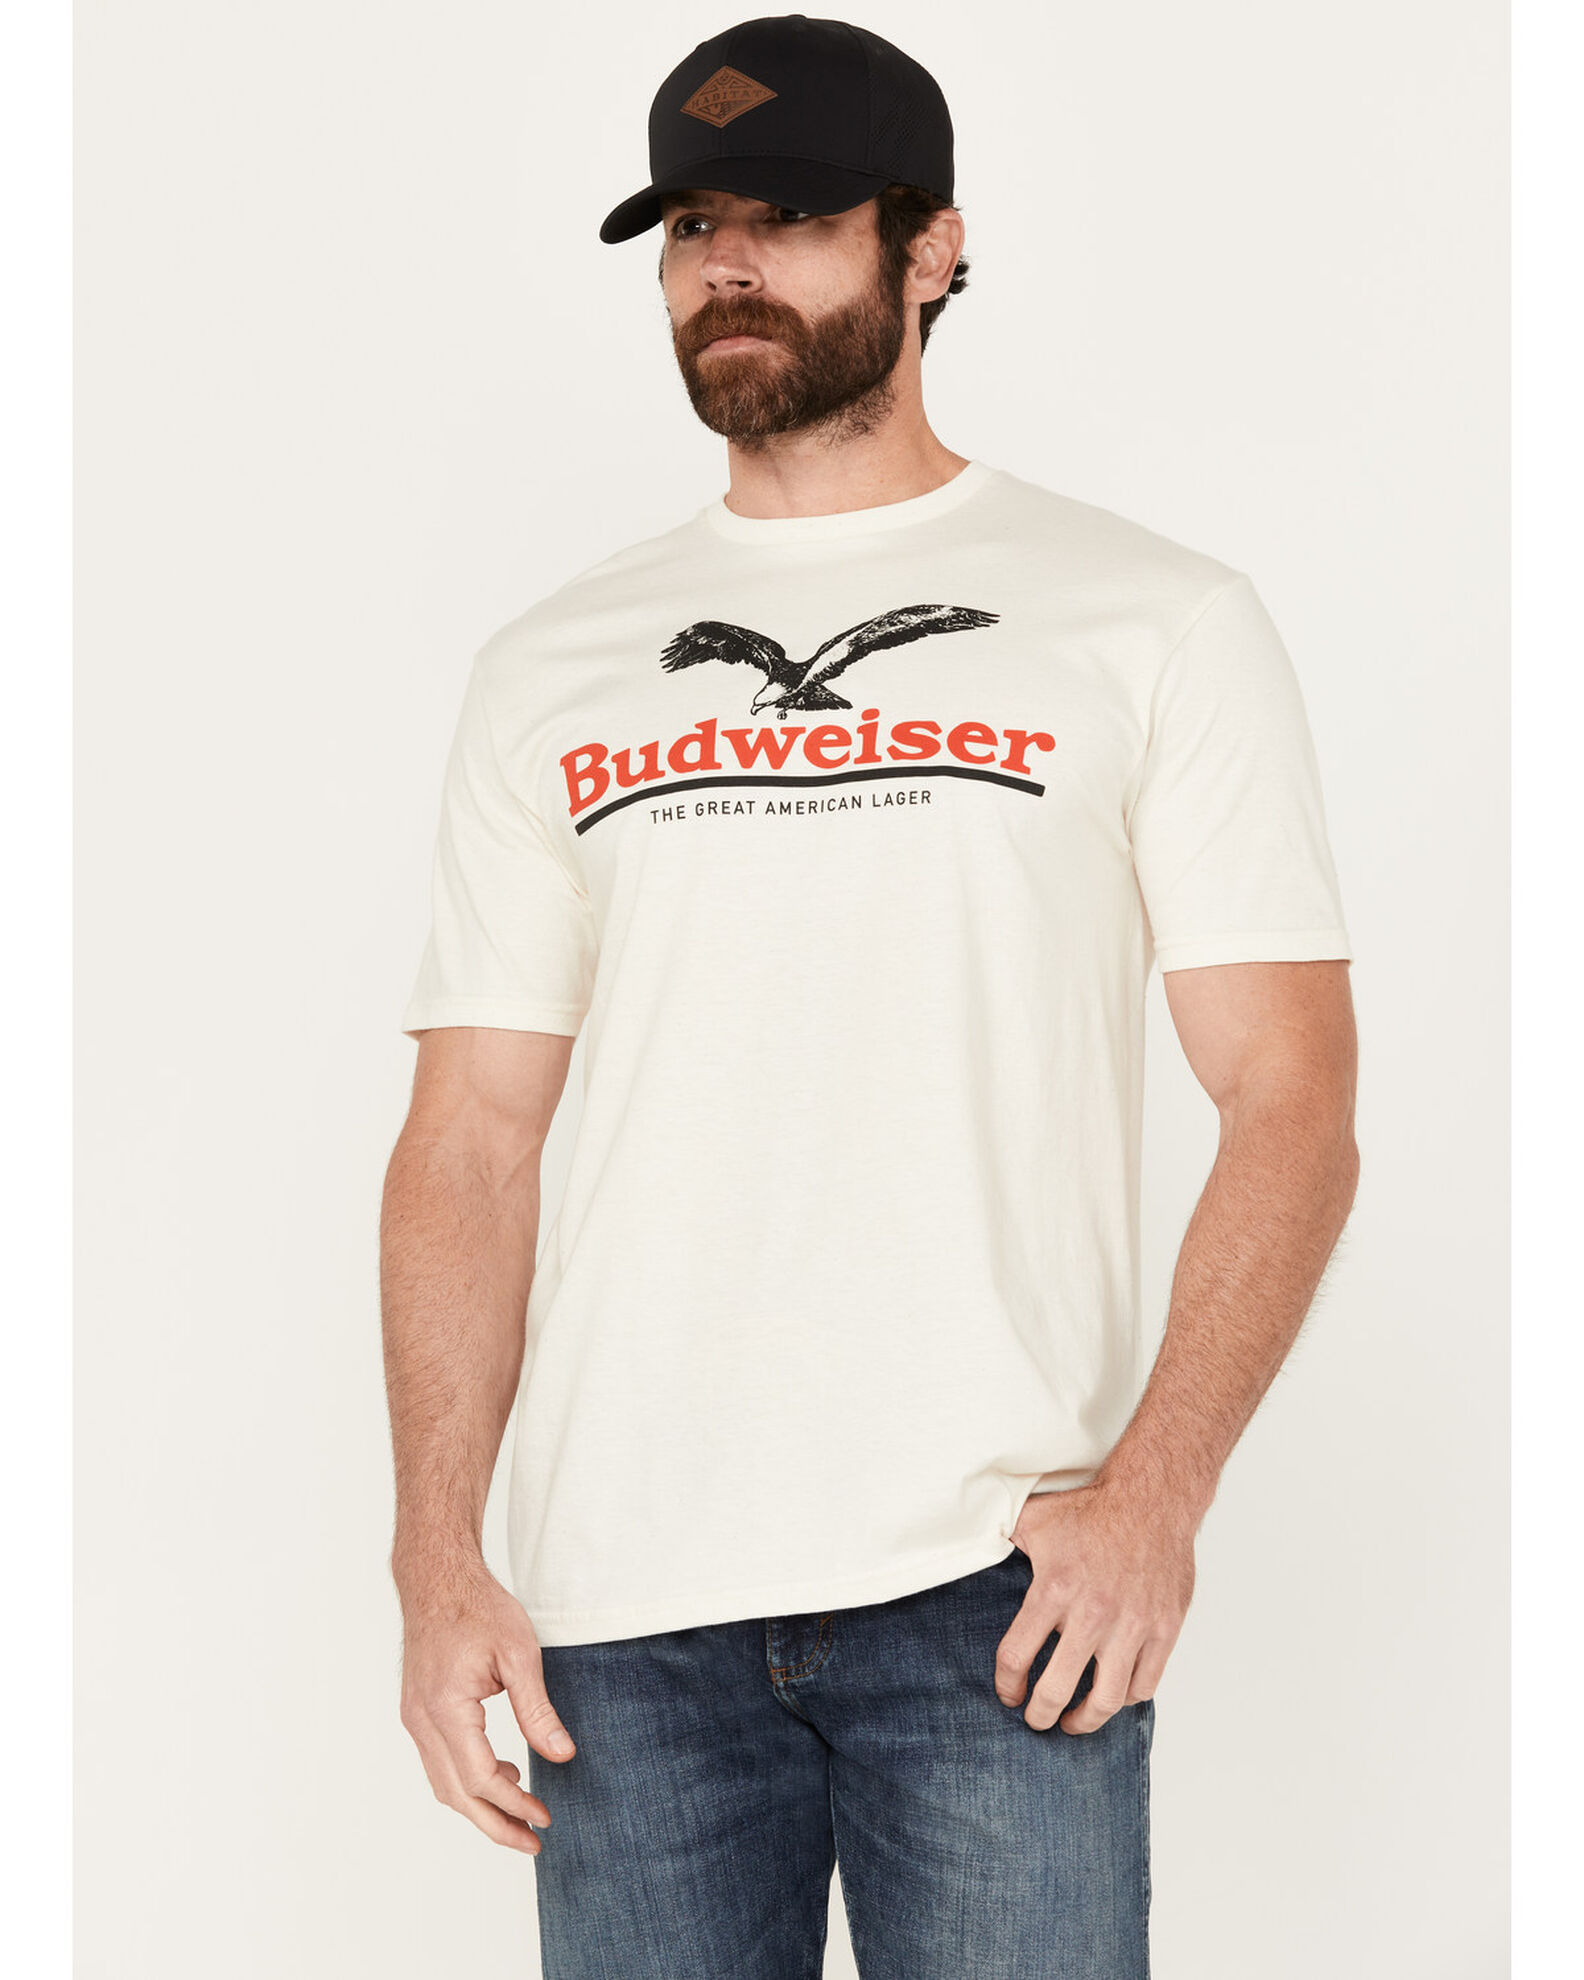 Brew City Beer Gear Men's Budweiser Logo Short Sleeve Graphic T-Shirt